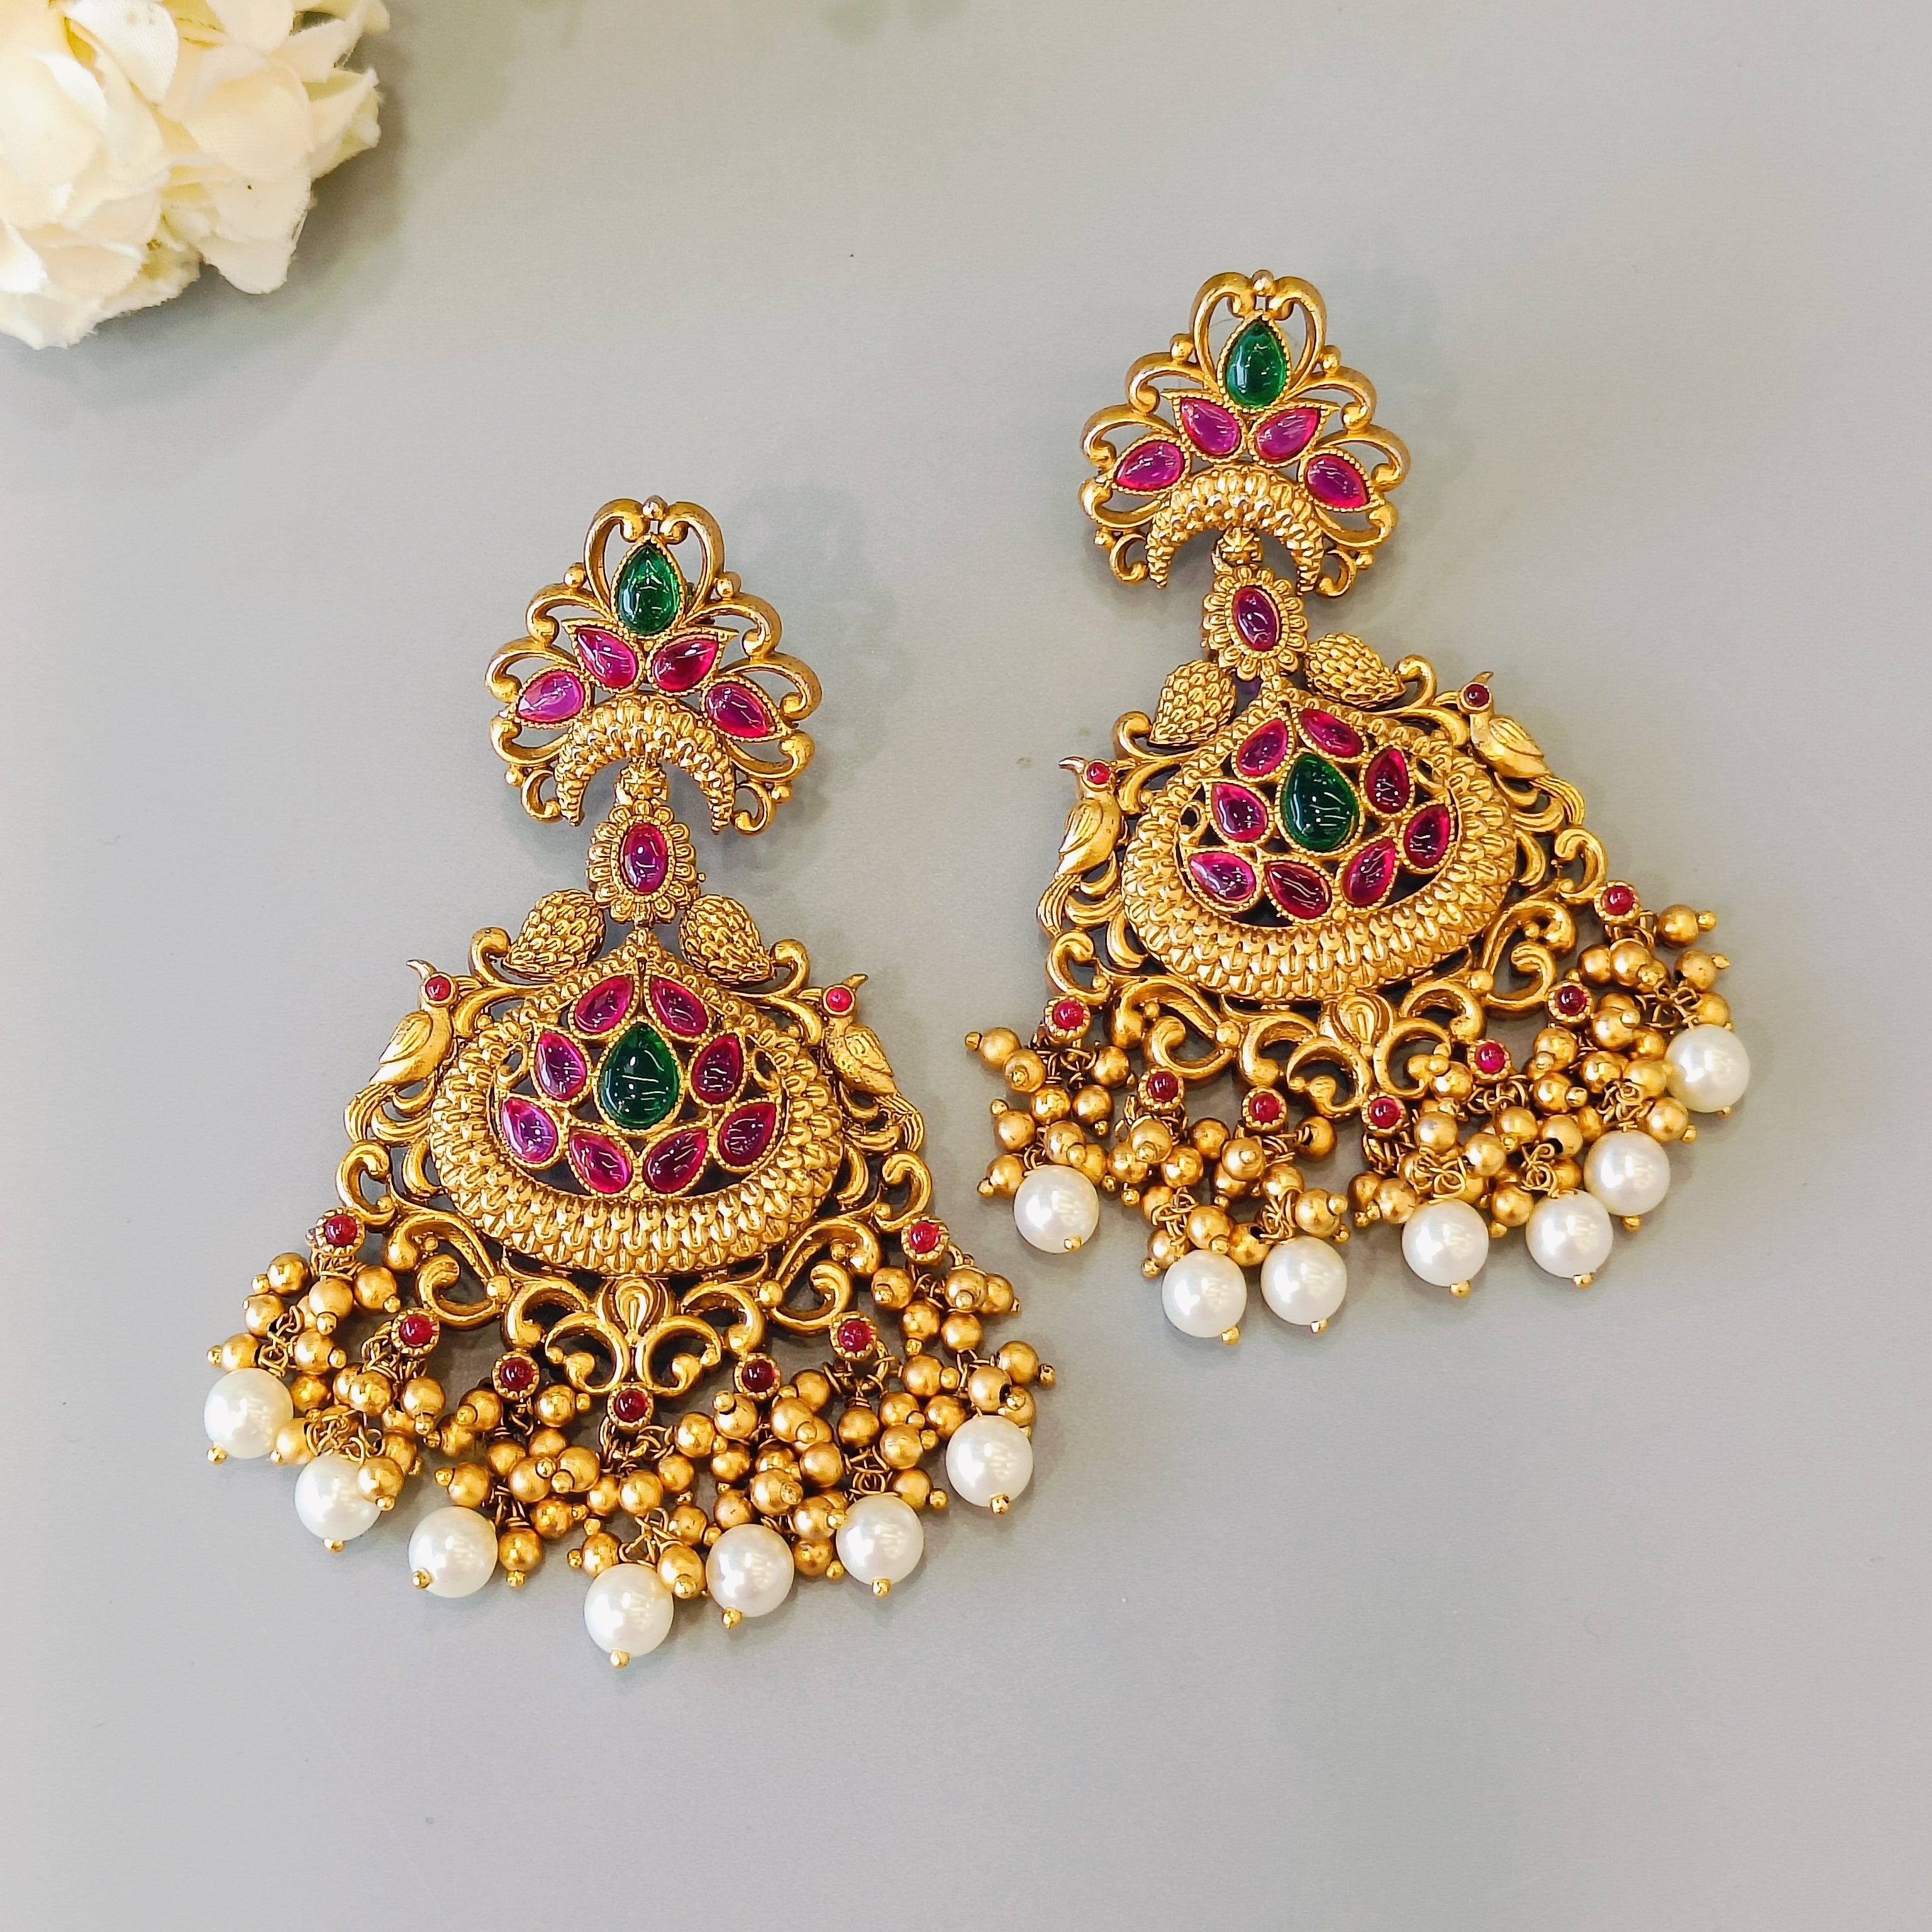 Nayaab Mayur earrings